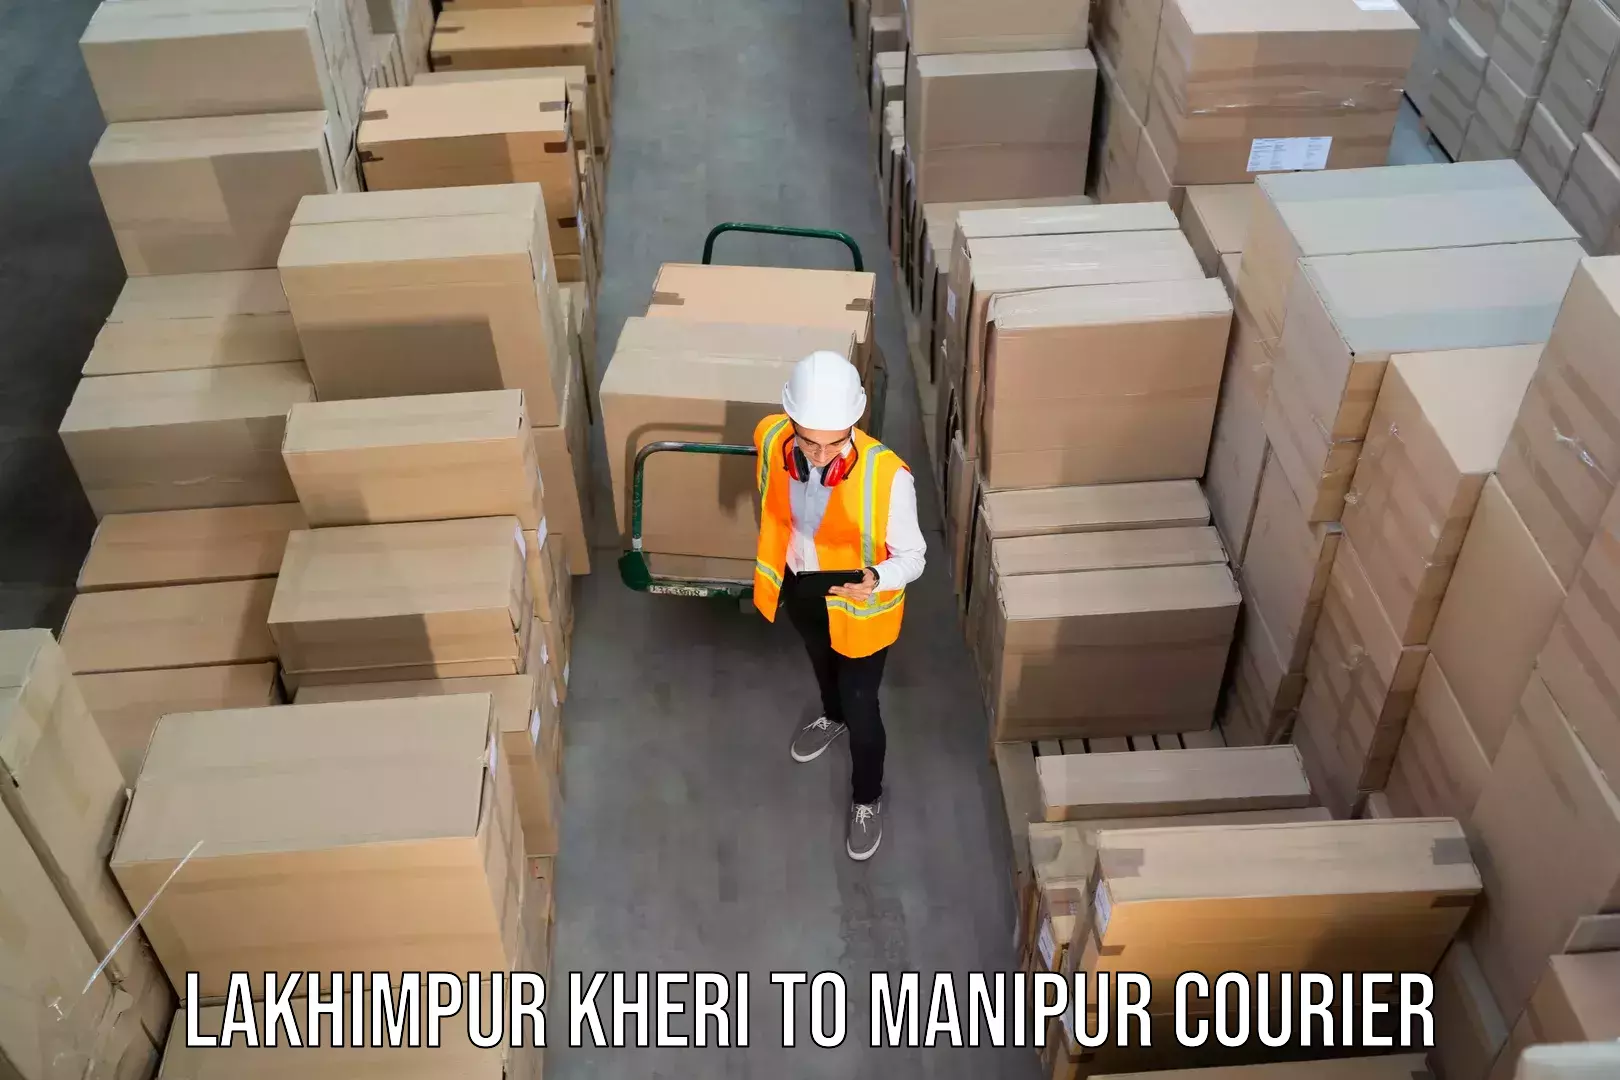 24/7 shipping services Lakhimpur Kheri to Moirang